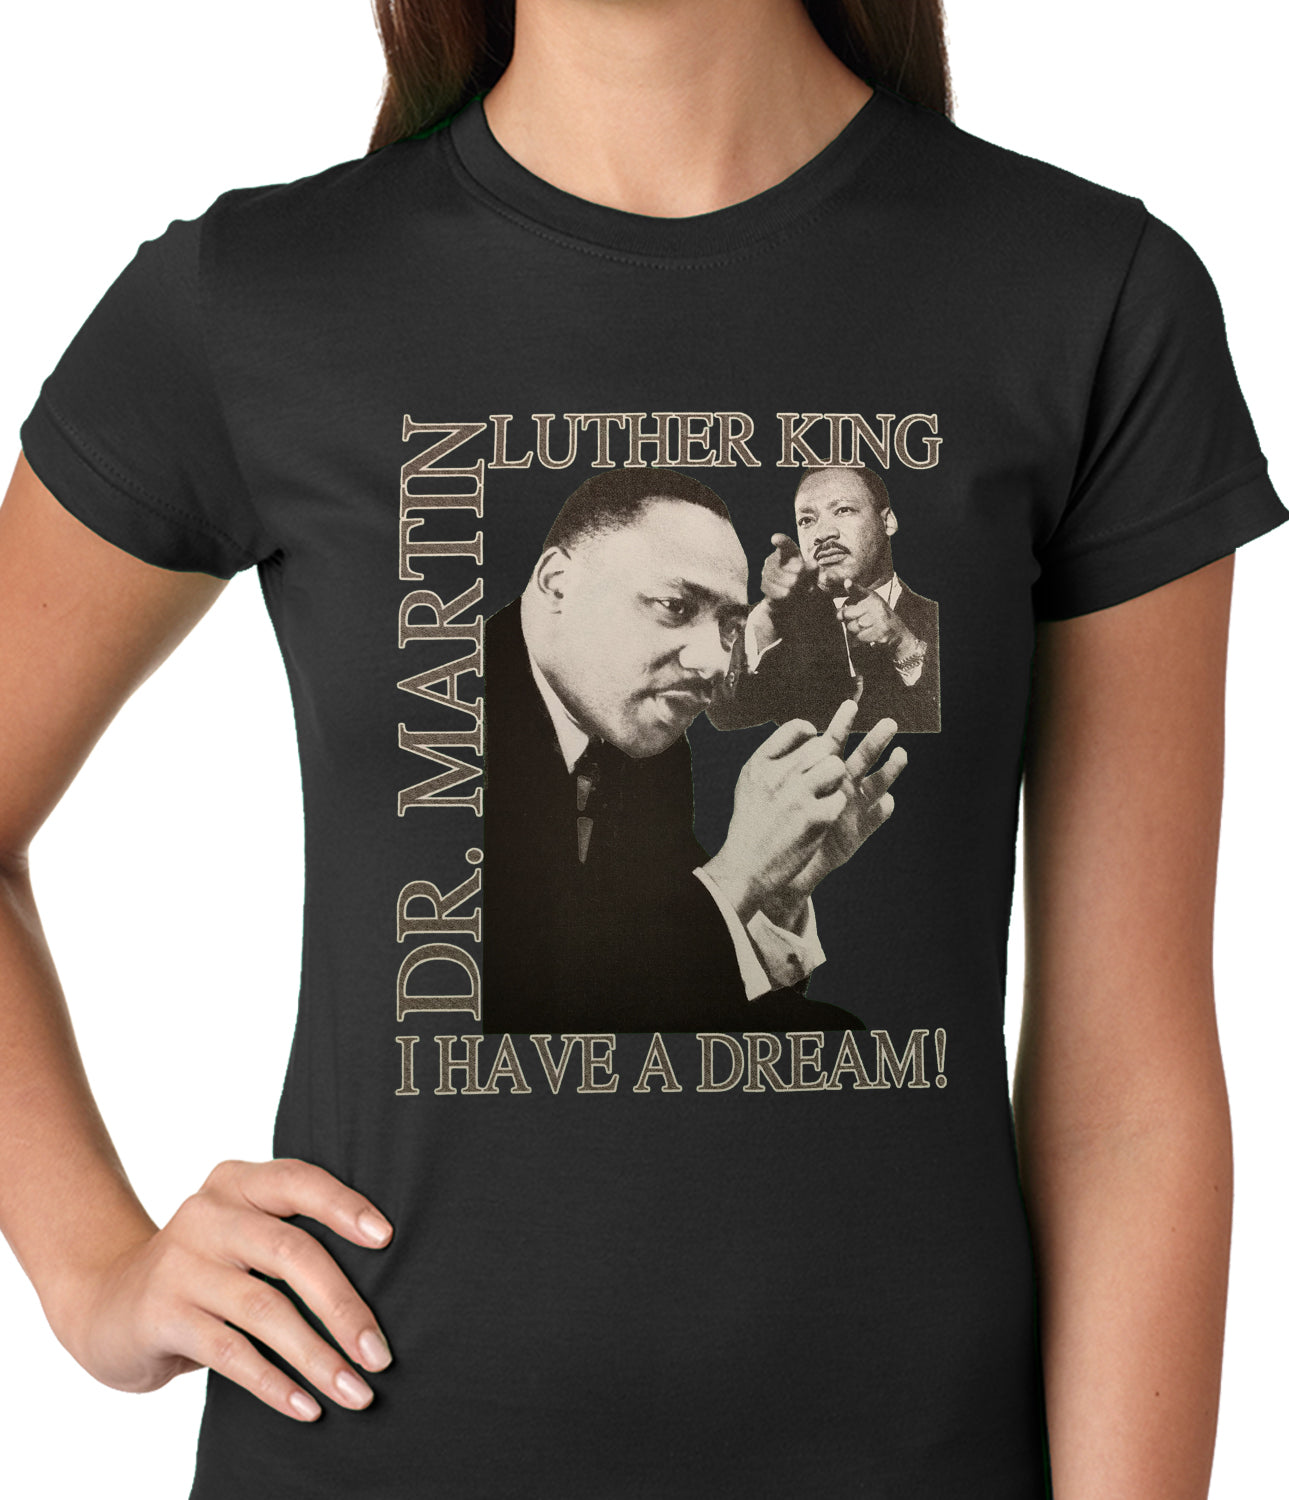 a dream shirt